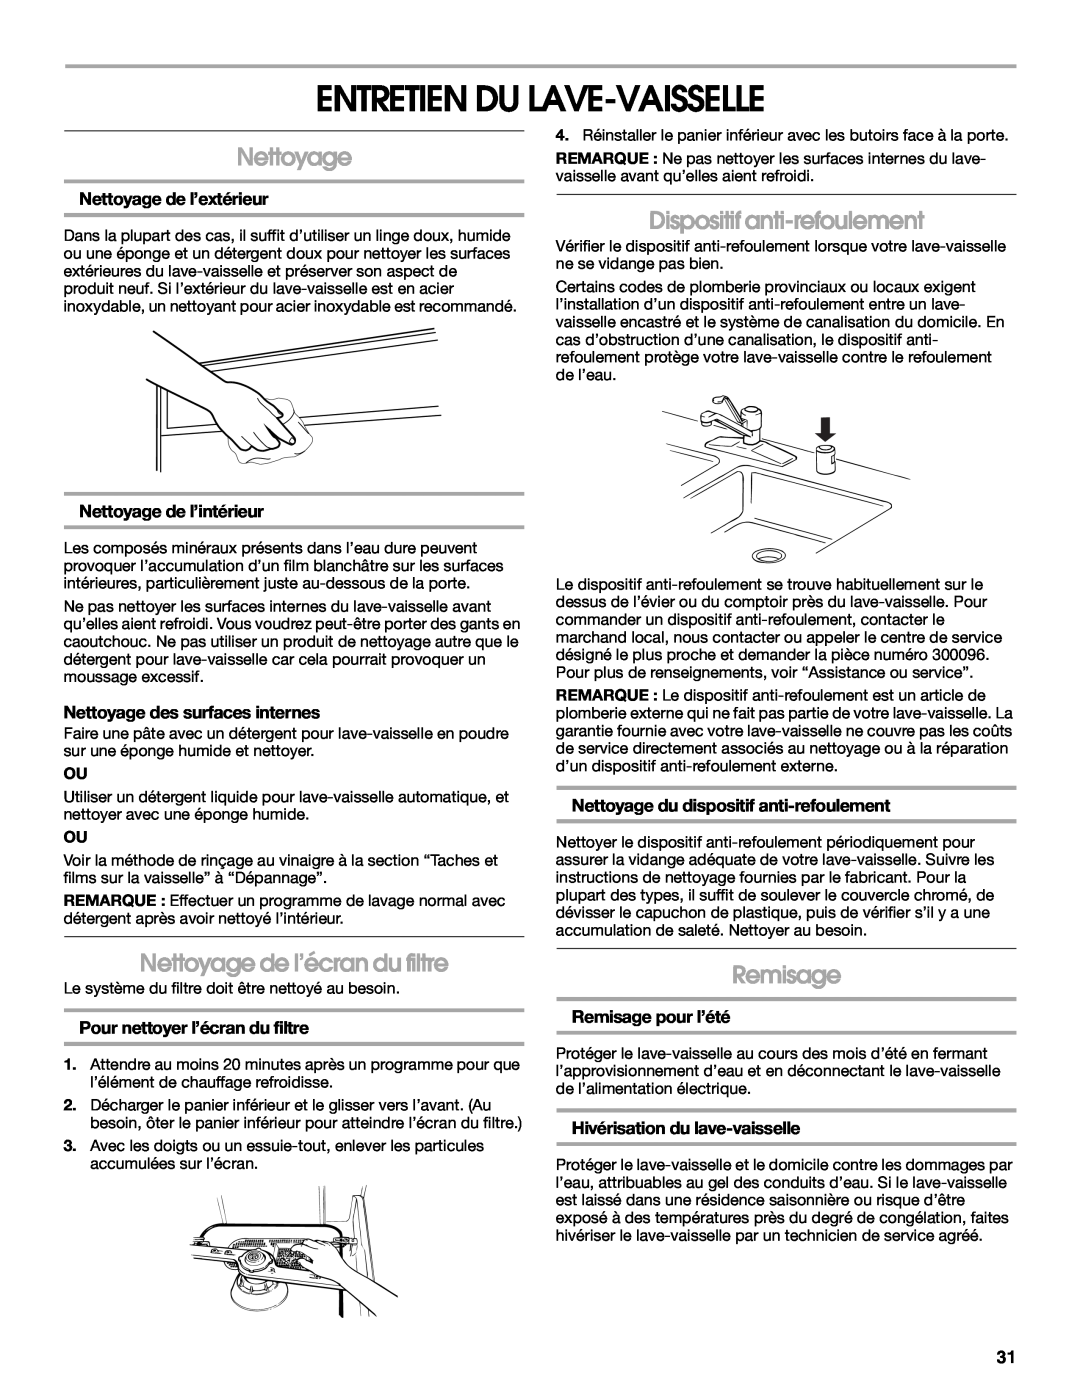 IKEA IUD6000S manual Entretien Du Lave-Vaisselle, Nettoyage de l’écran du filtre, Dispositif anti-refoulement, Remisage 